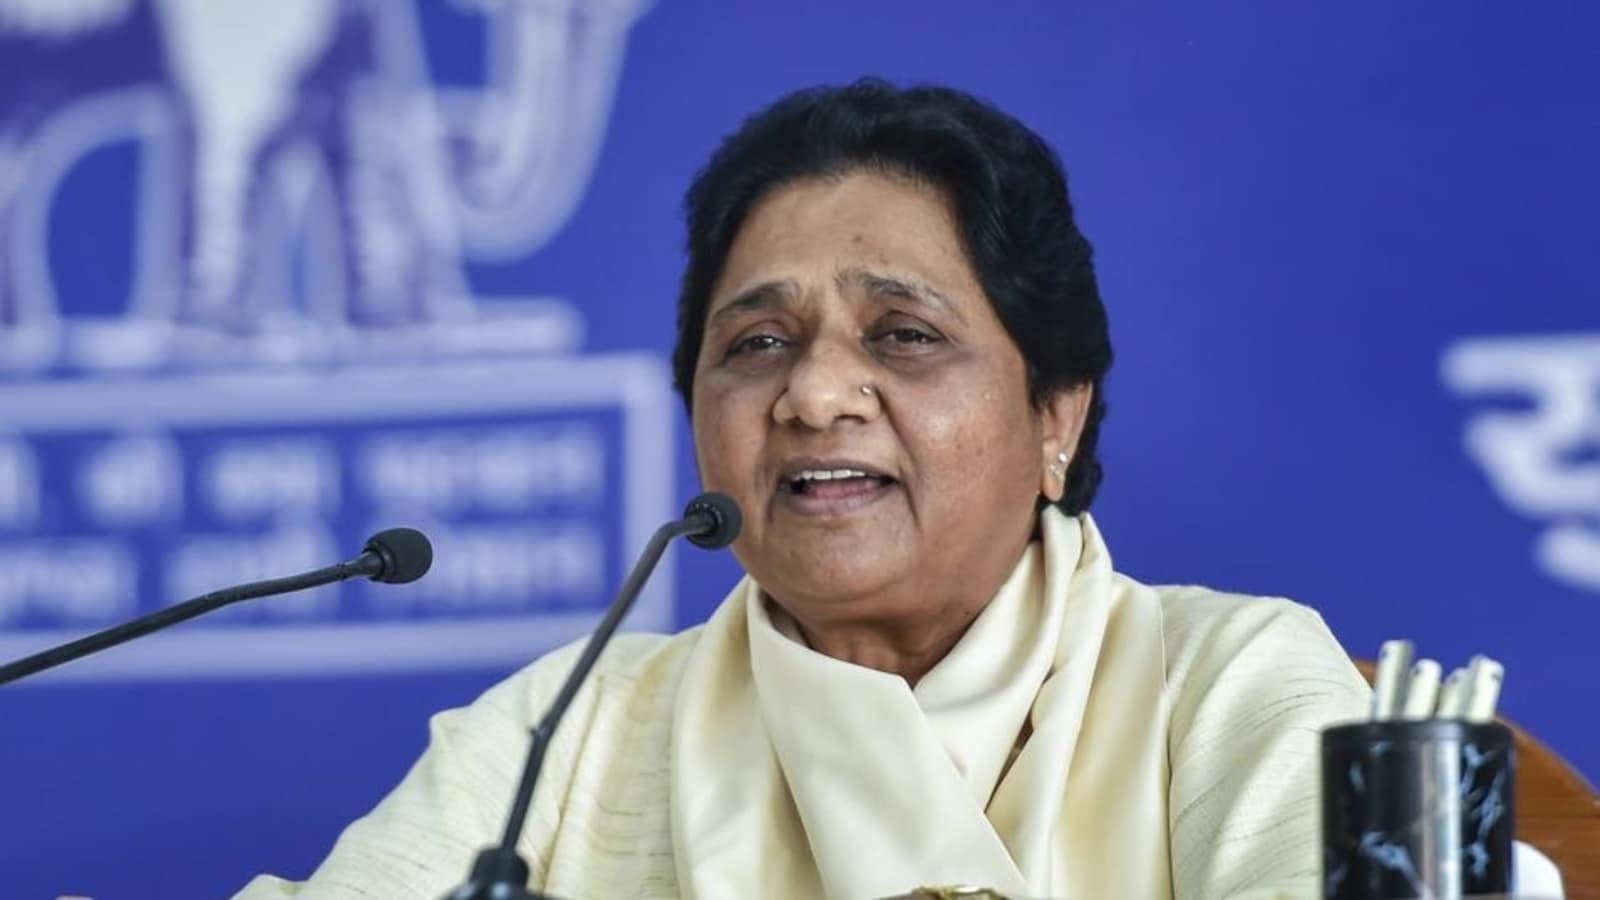 Mayawati ने भाजपा को आड़े हाथों लिया, कहा- पसमांदा मुस्लिम समाज का राग अलापना गलत, सोच किसी से छिपी नहीं